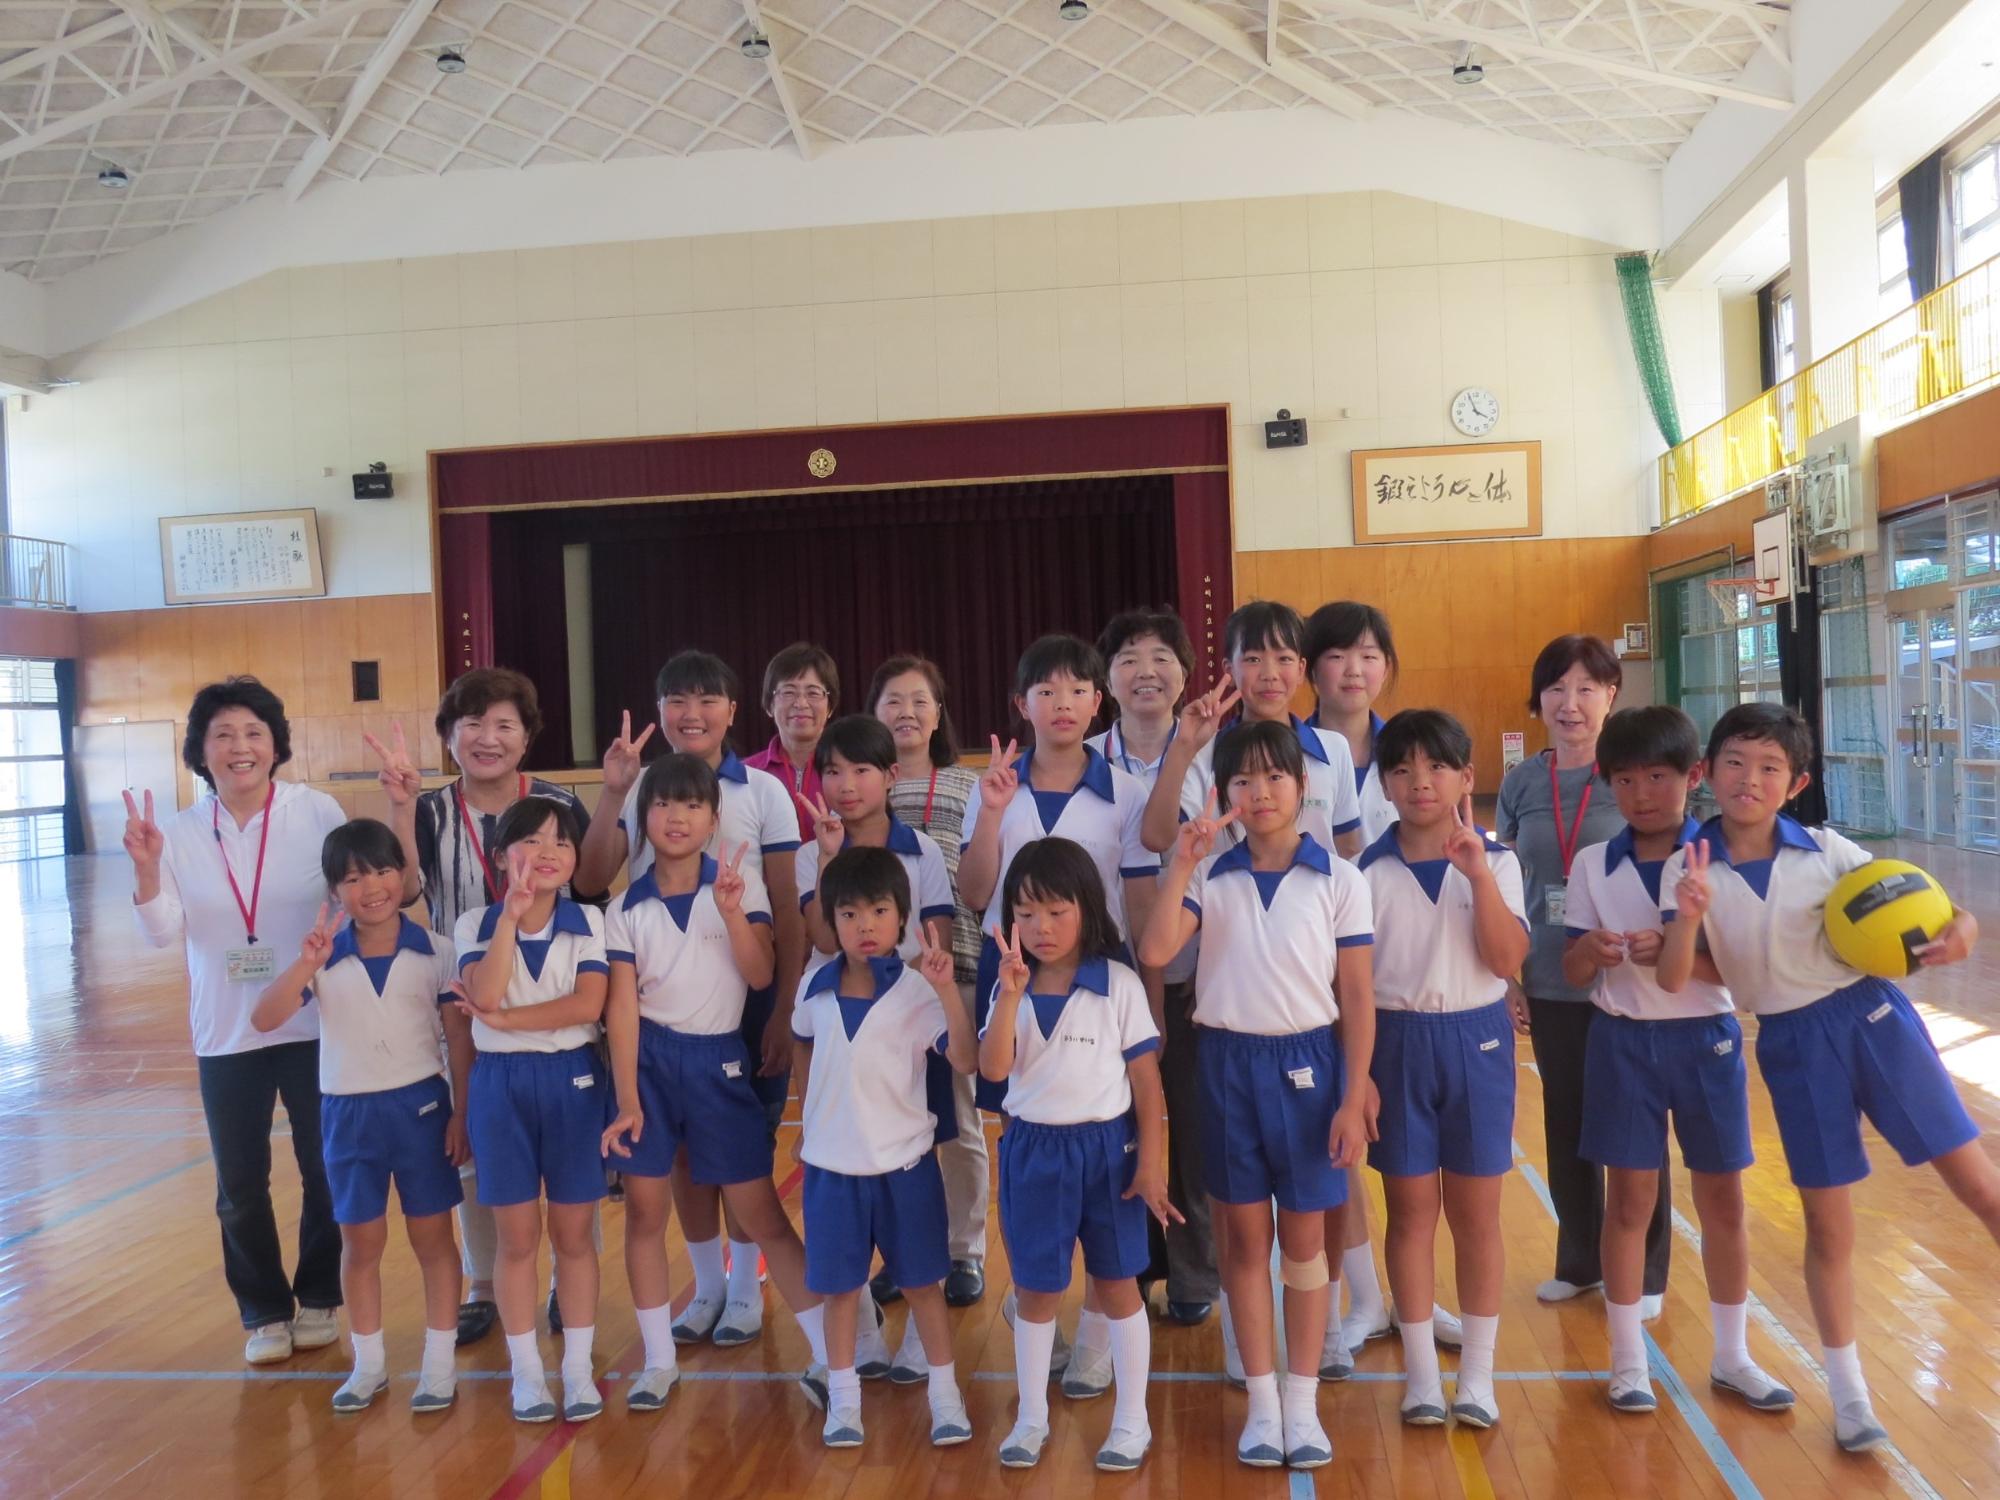 神野小昔遊び教室に参加した子どもたちの集合写真